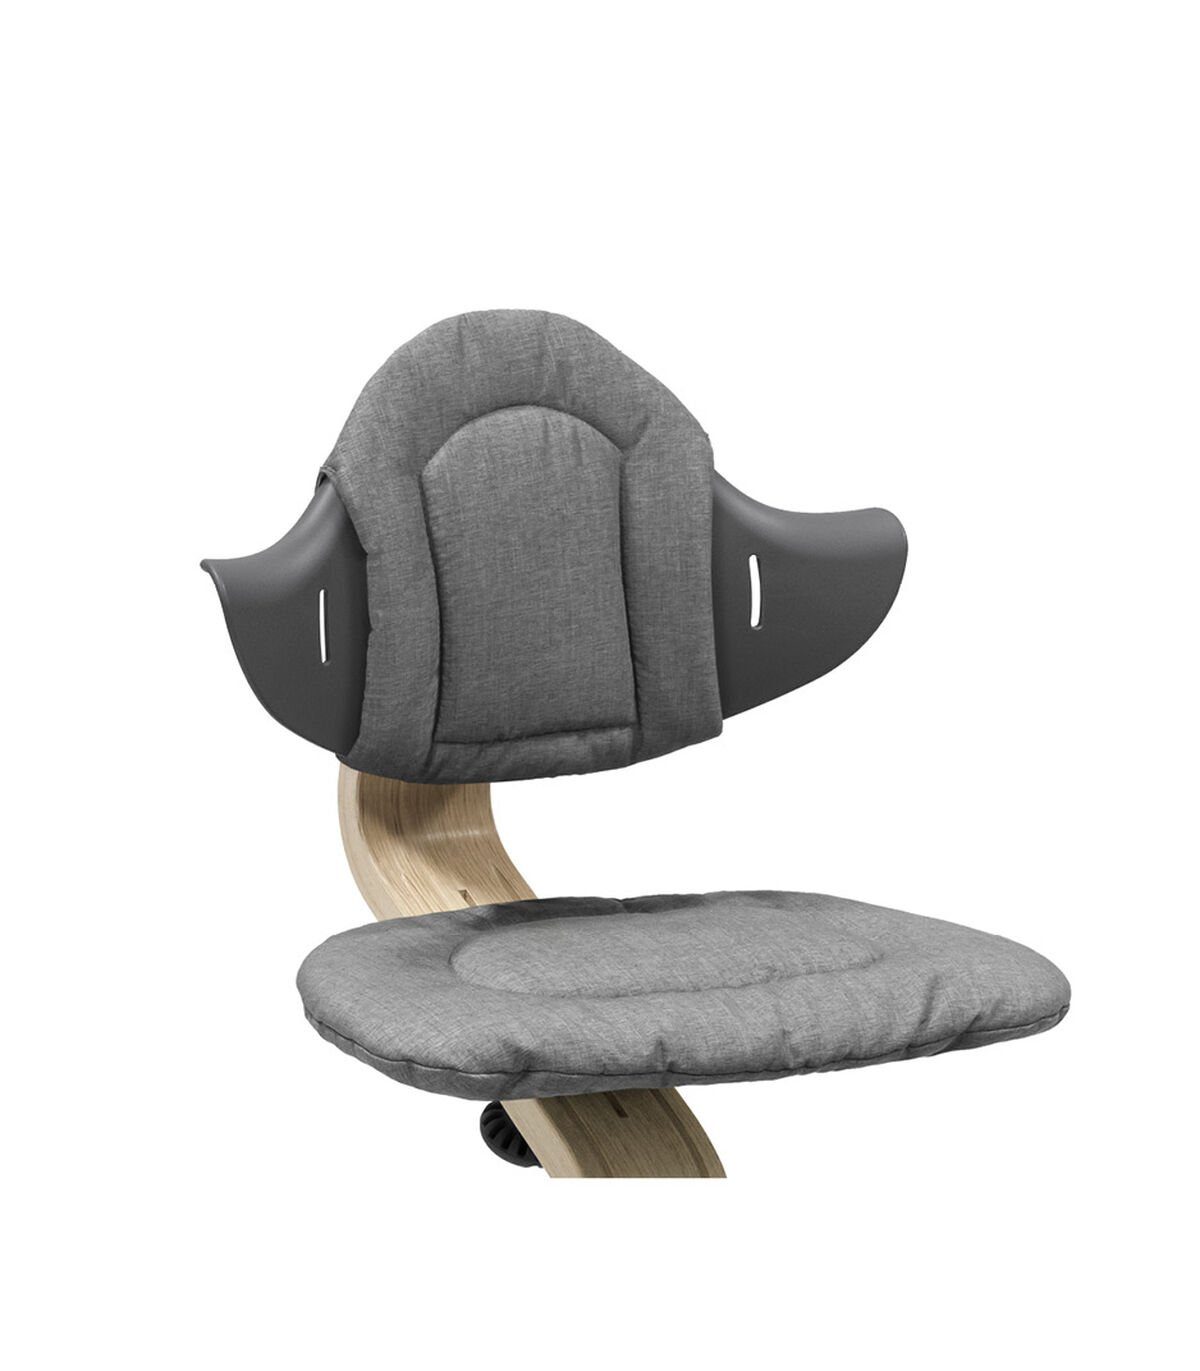 Blue Hochstuhl Nomi® Nomi® Stuhl und Grey Weiches Stokke für Kissen Stokke® Hochstuhlauflage Kissen,